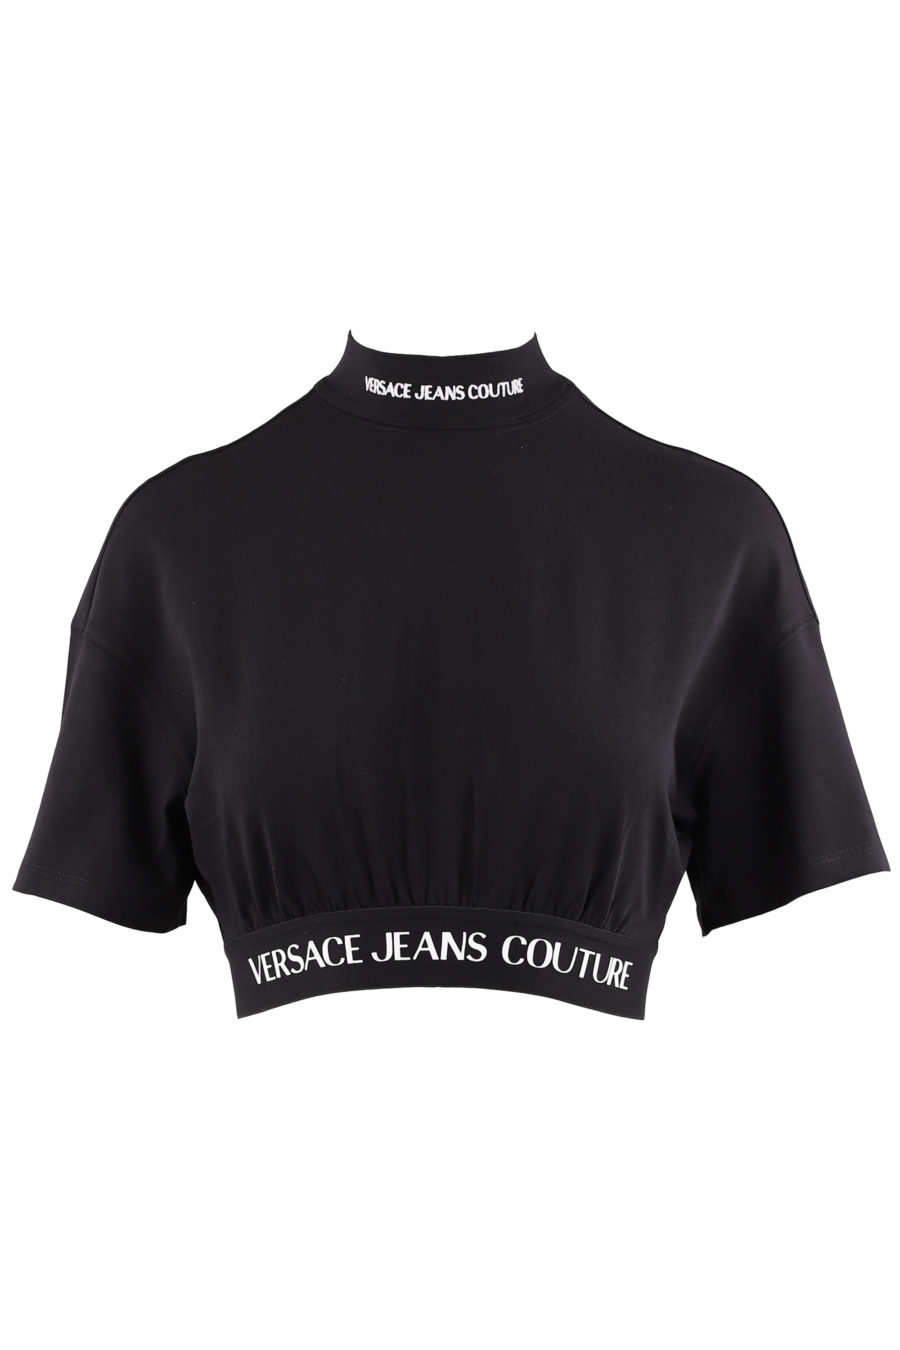 Schwarzes kurzes T-Shirt mit Logodruck - 3851b4b1da749e46b7ba341fbc846fbd32f9a14f